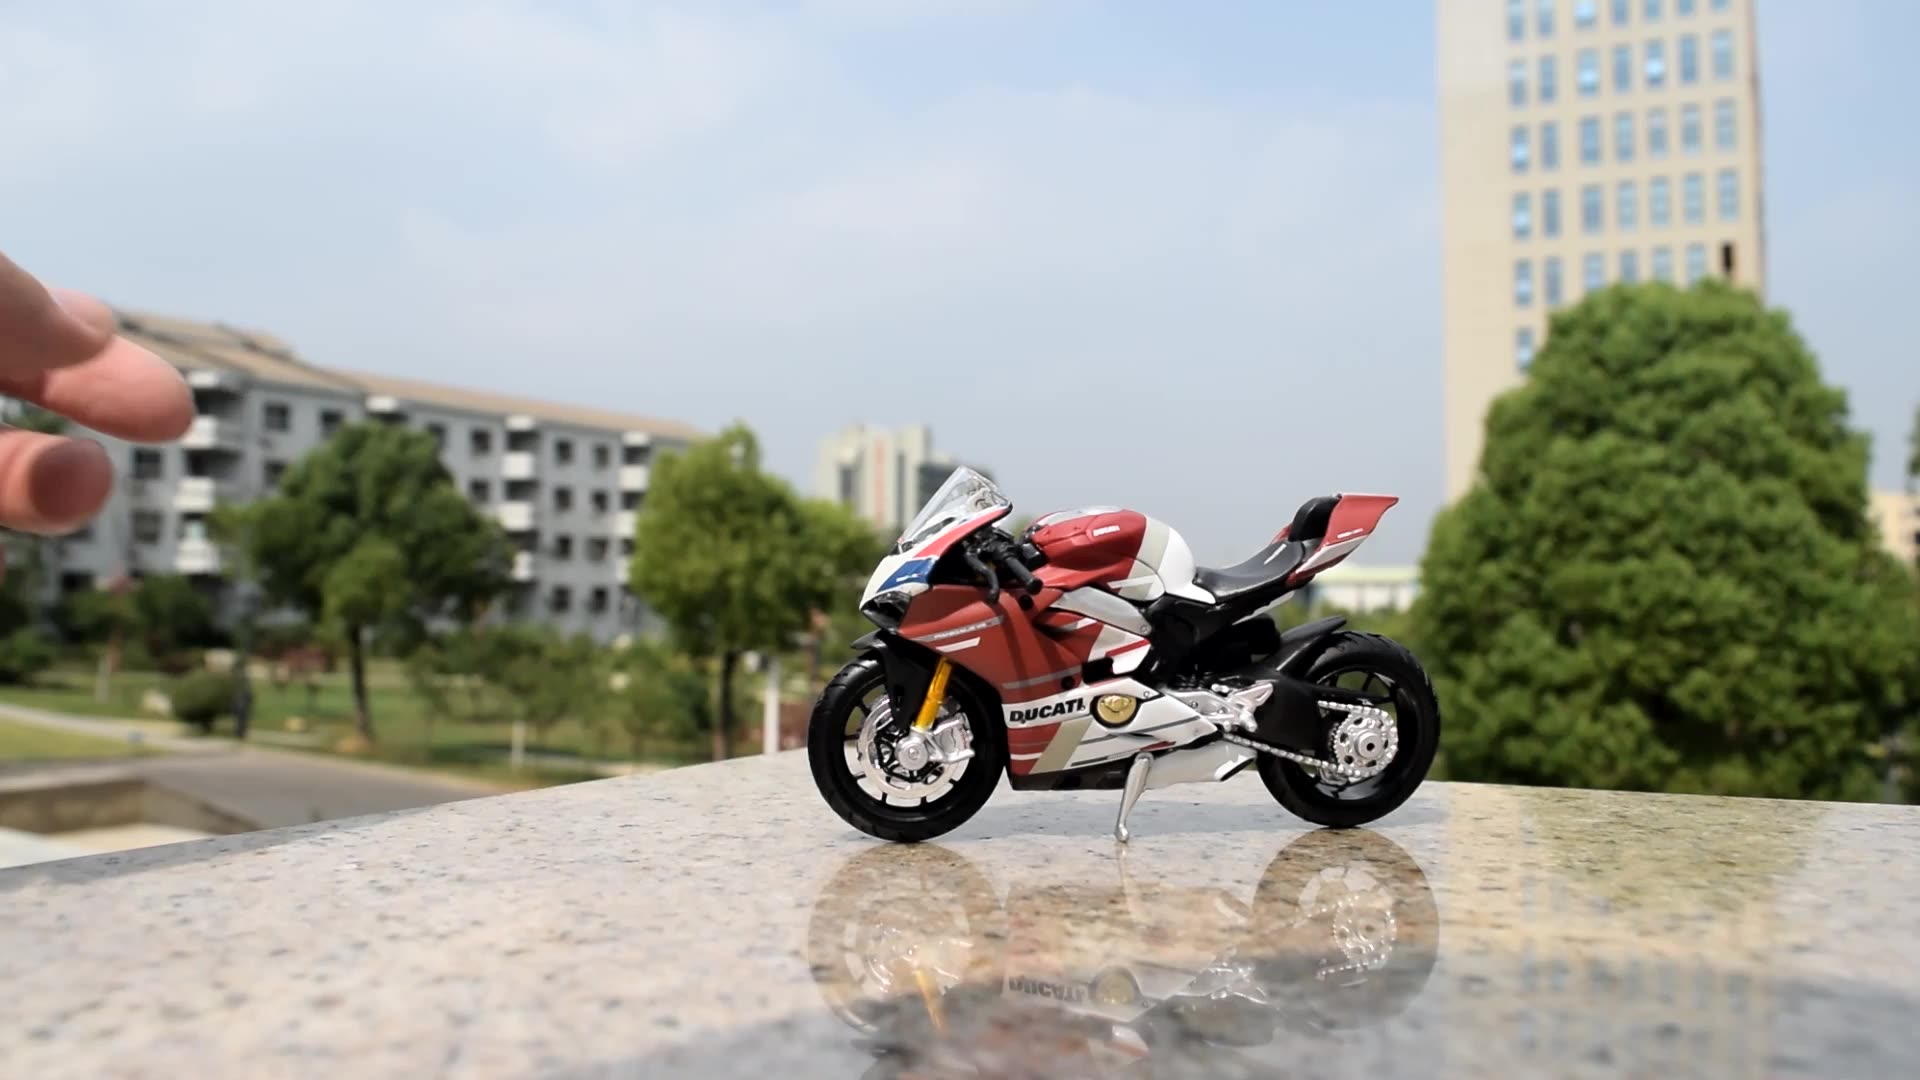 Ducati V4S Panigale Meritor 그림 새로운 1:18 합금 오토바이 모델 장식 케이크 장식